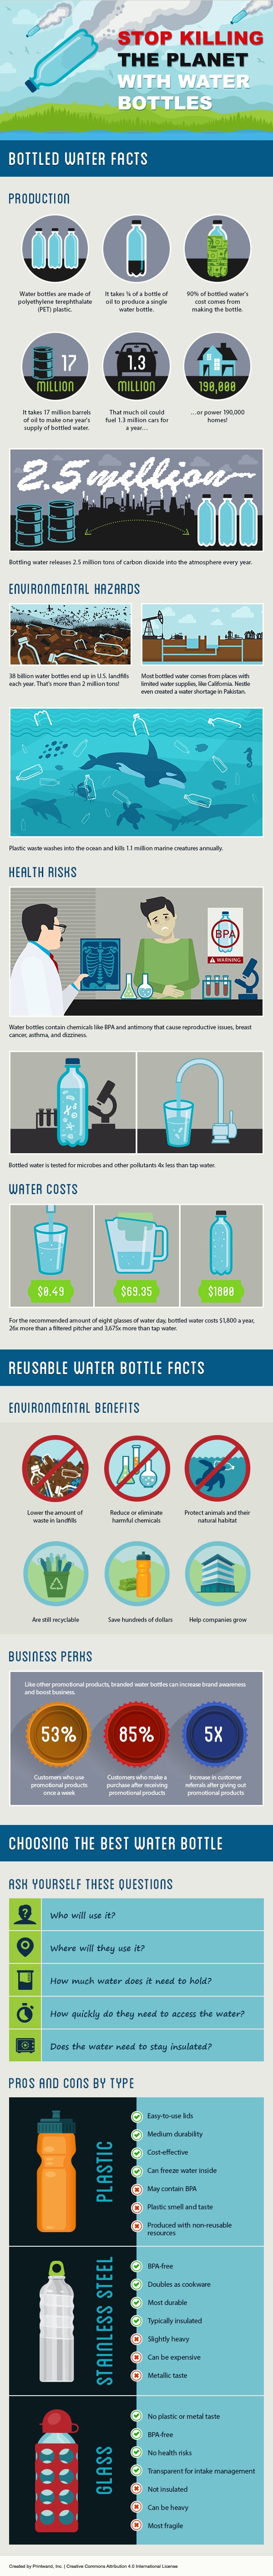 塑料水瓶污染环境影响信息图